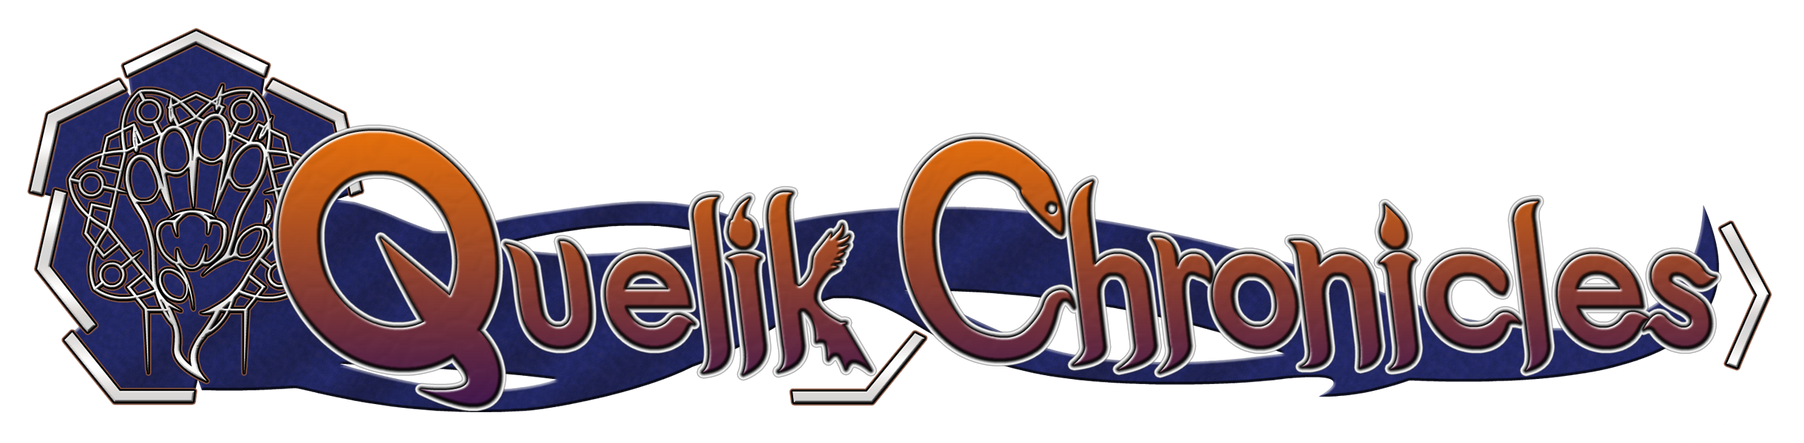 Logo changes part 2: Quelik Chronicles Logo